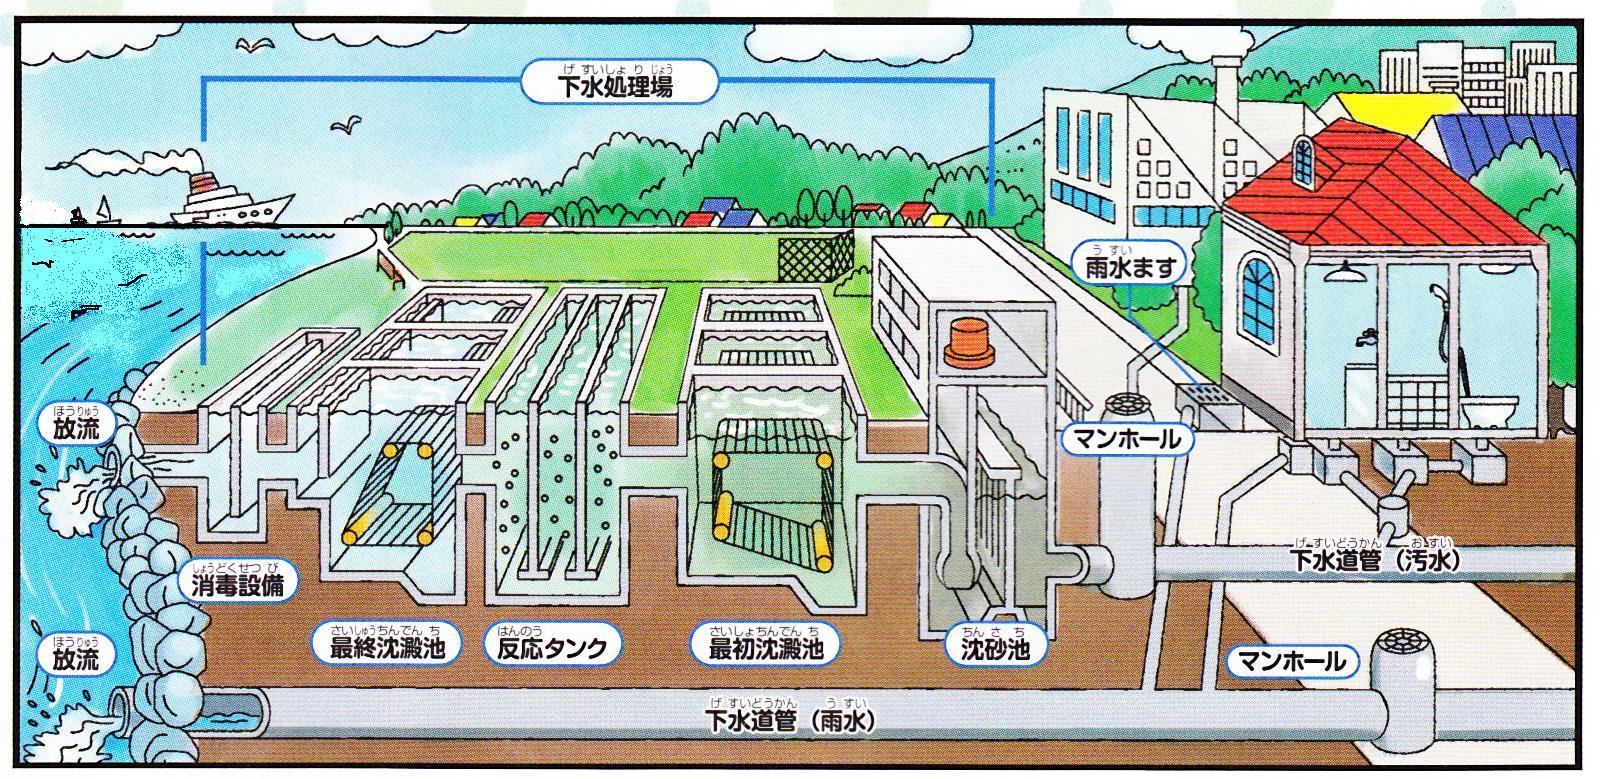 下水道管を通って集められた汚水が下水処理場で処理される図